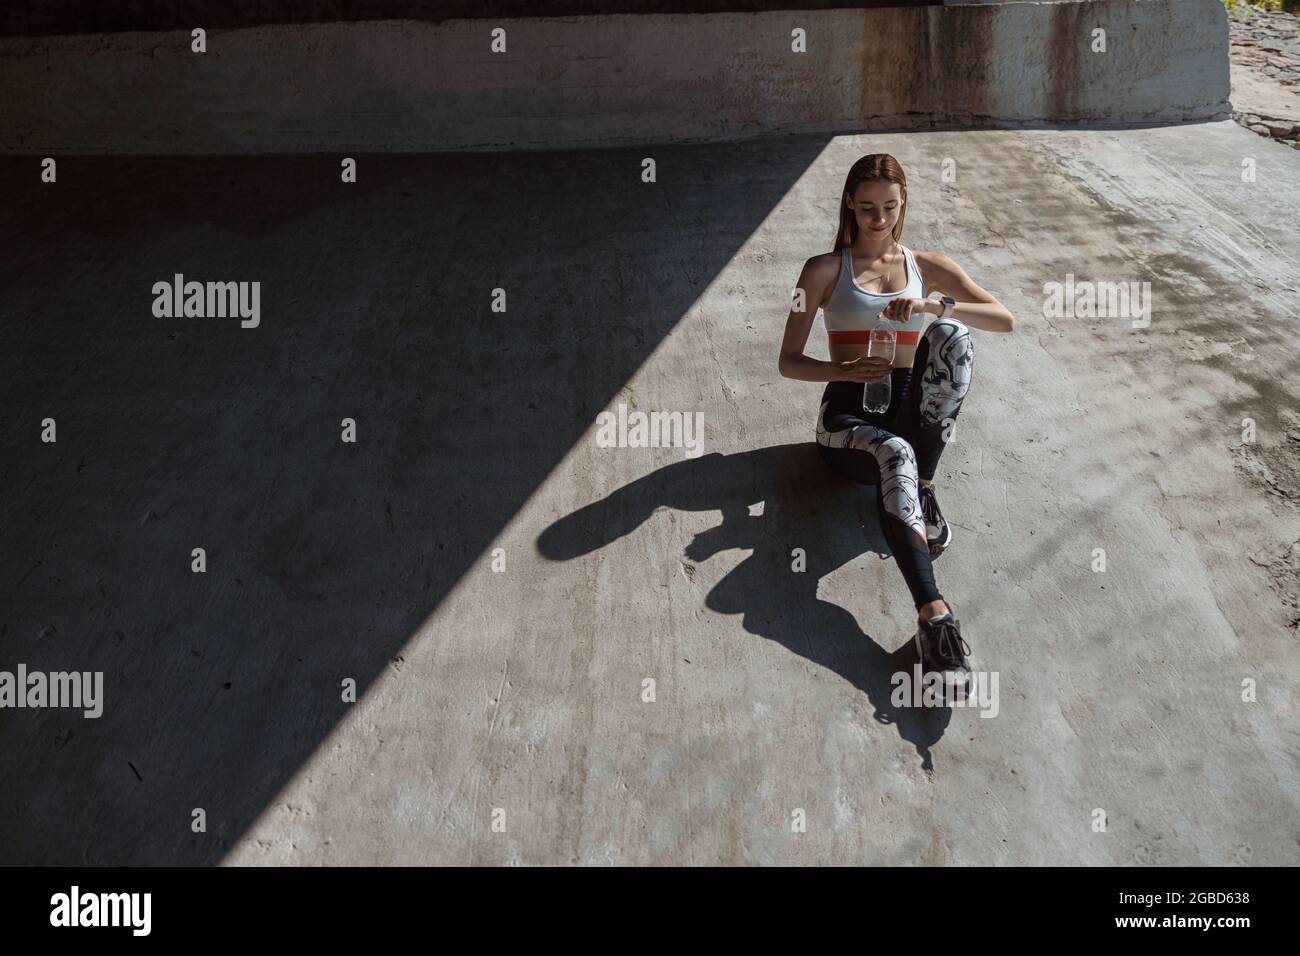 Frau in Sportkleidung und Turnschuhen öffnet eine Flasche Wasser auf Betonboden Stockfoto